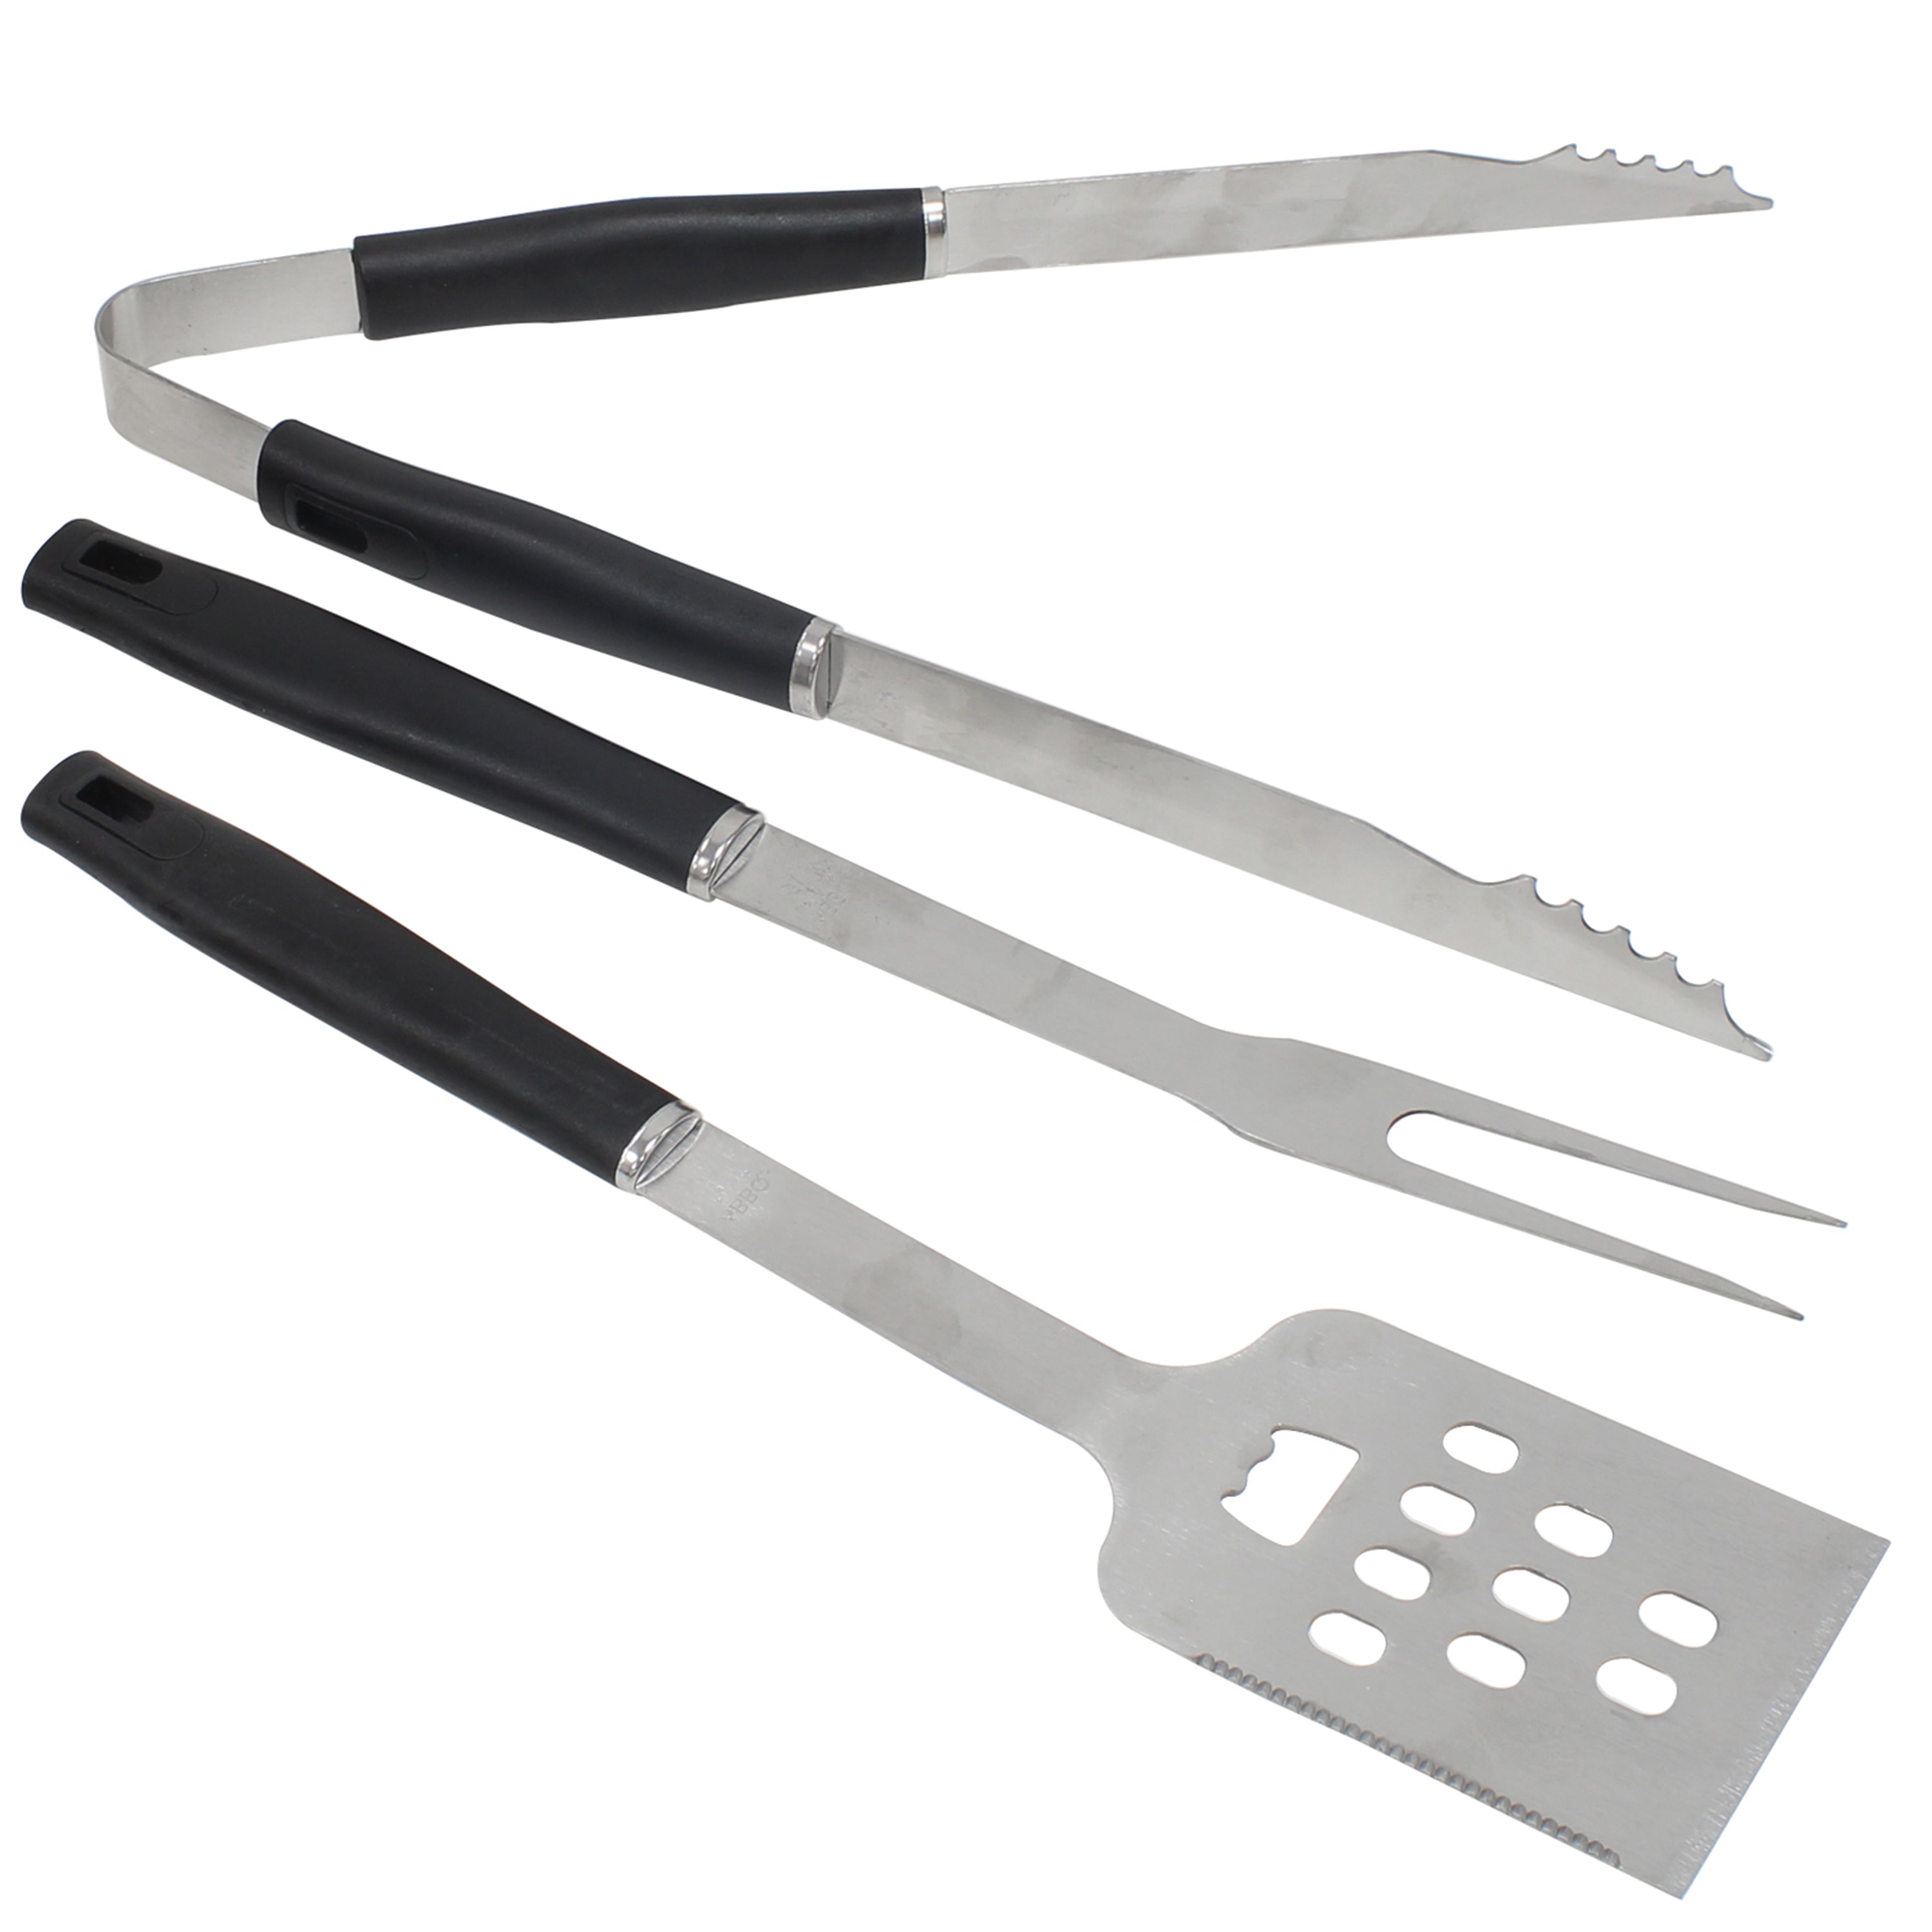 Juego de 3 herramientas Braai: tenedor, pinza y espátula de acero inoxidable